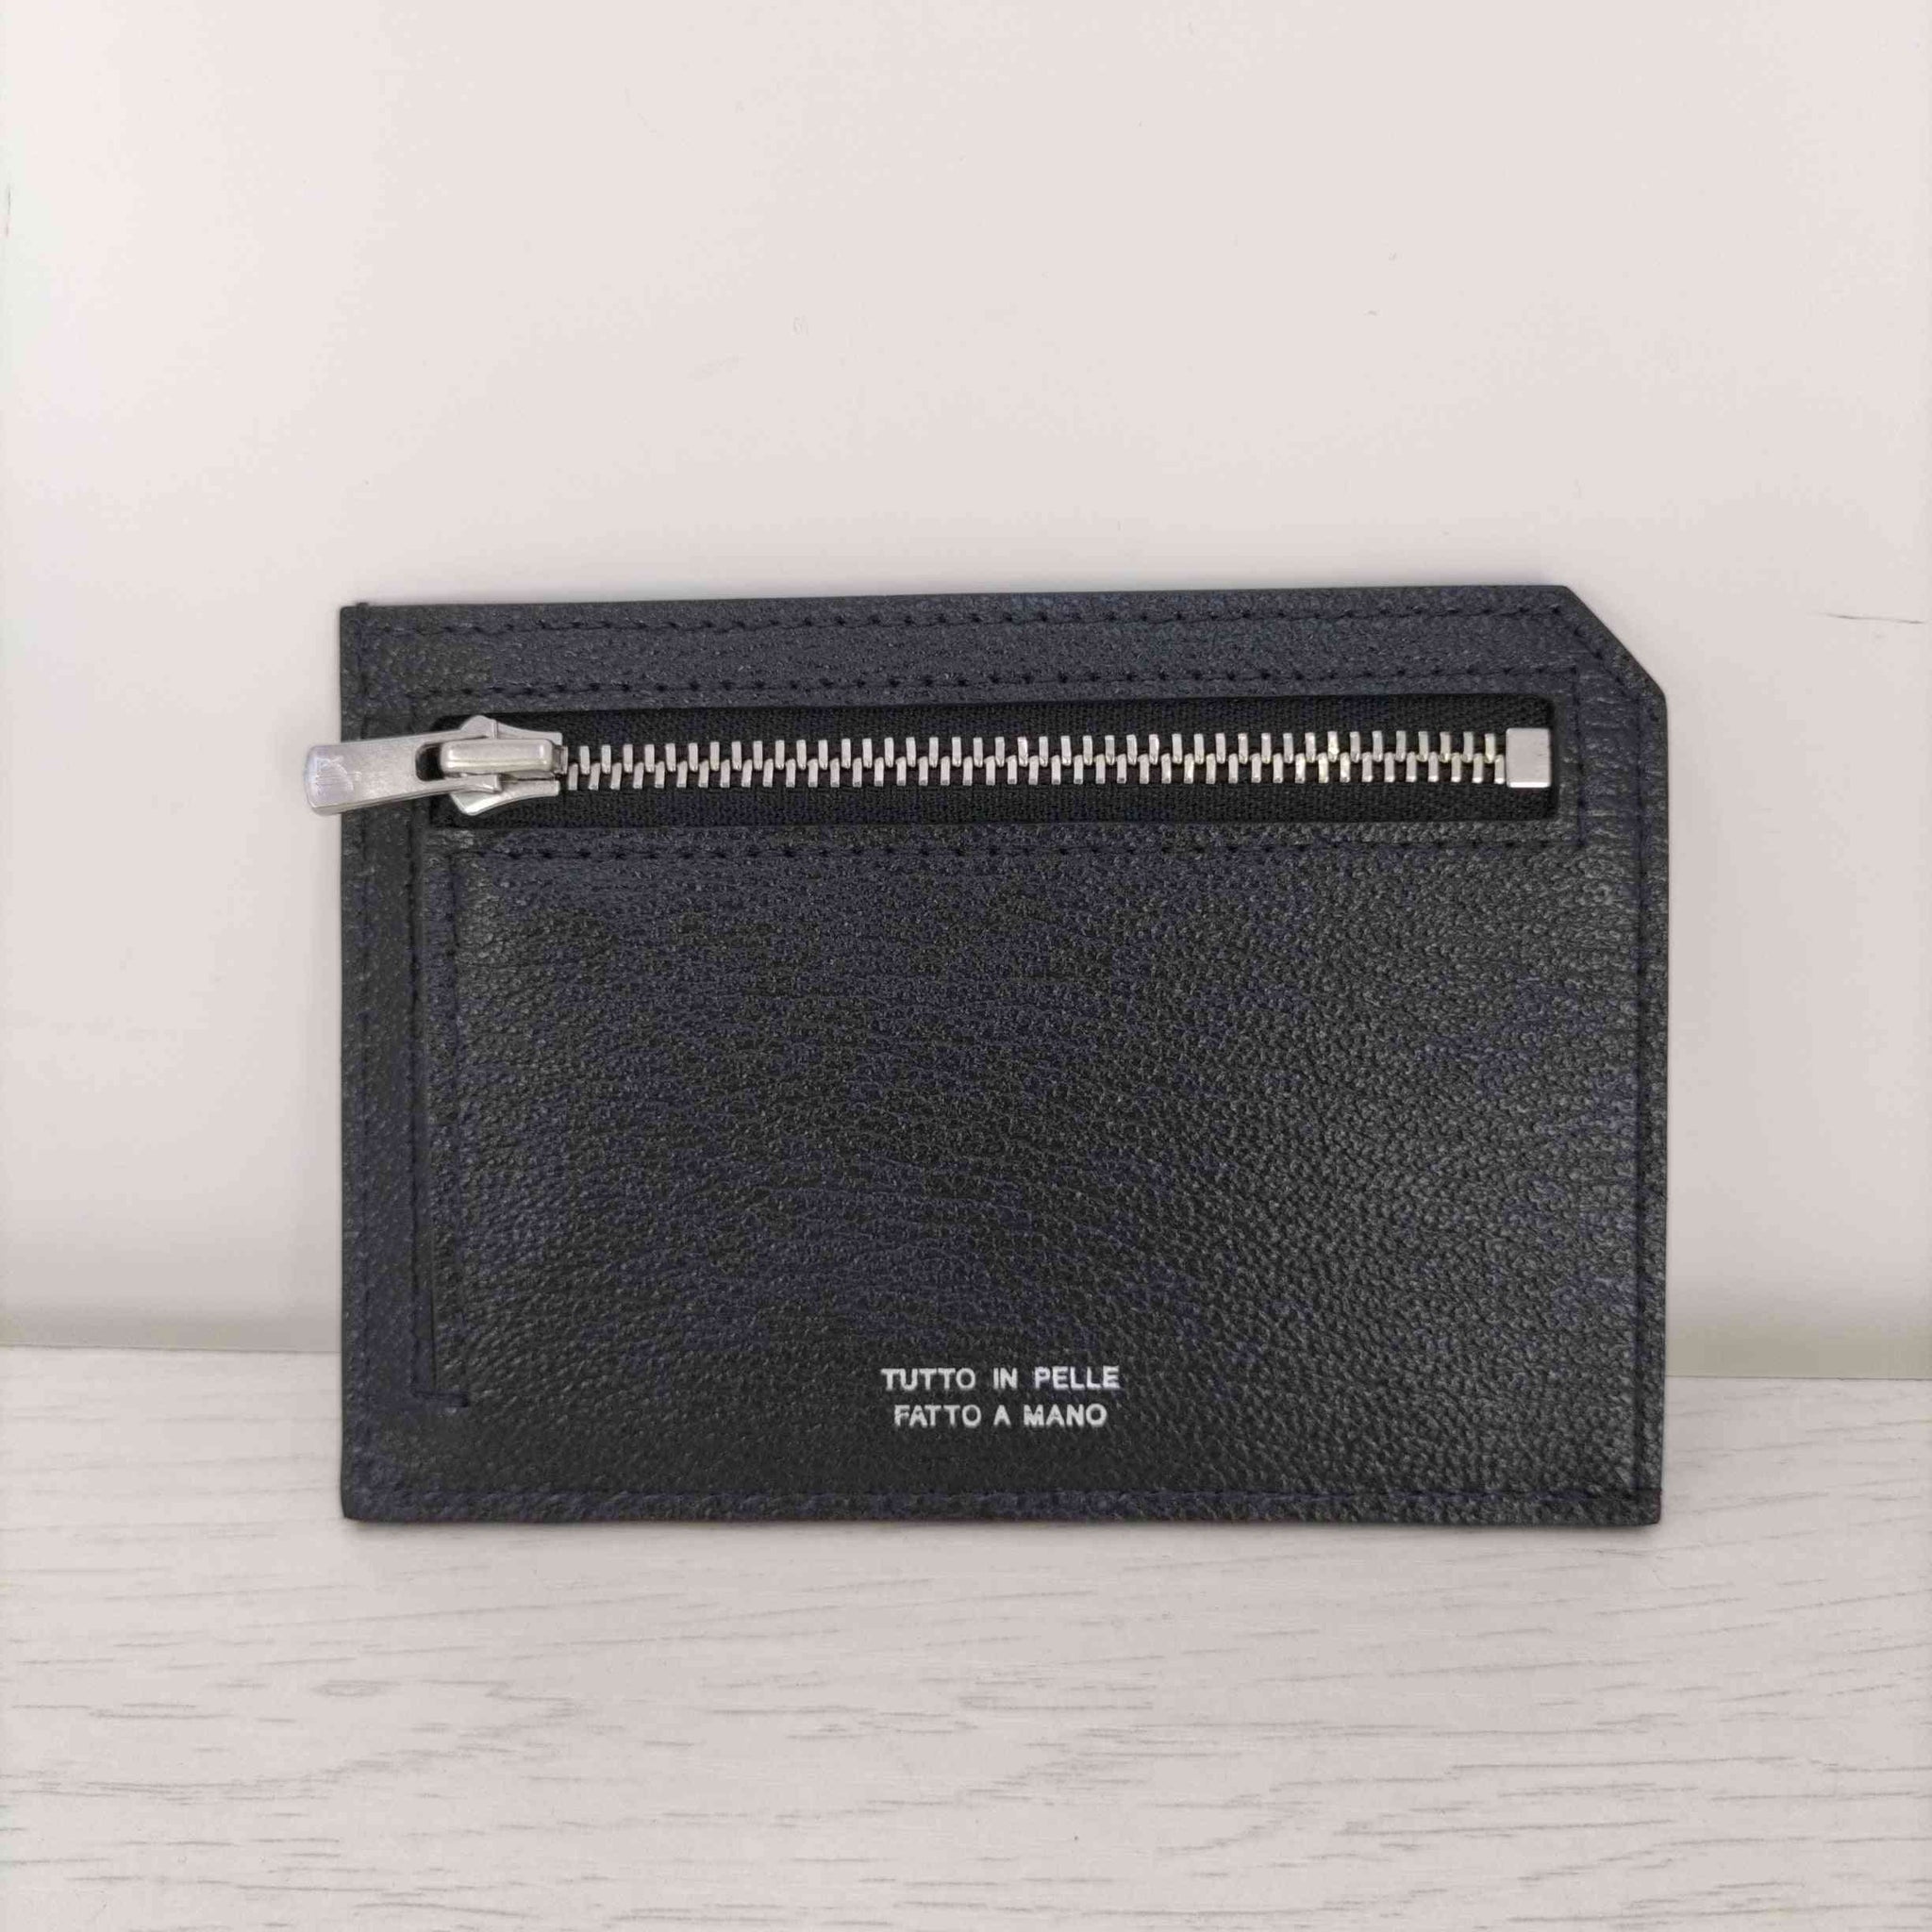 Larcobaleno(ラルコベレーノ)354 Smart mini wallet スマートミニウォレット